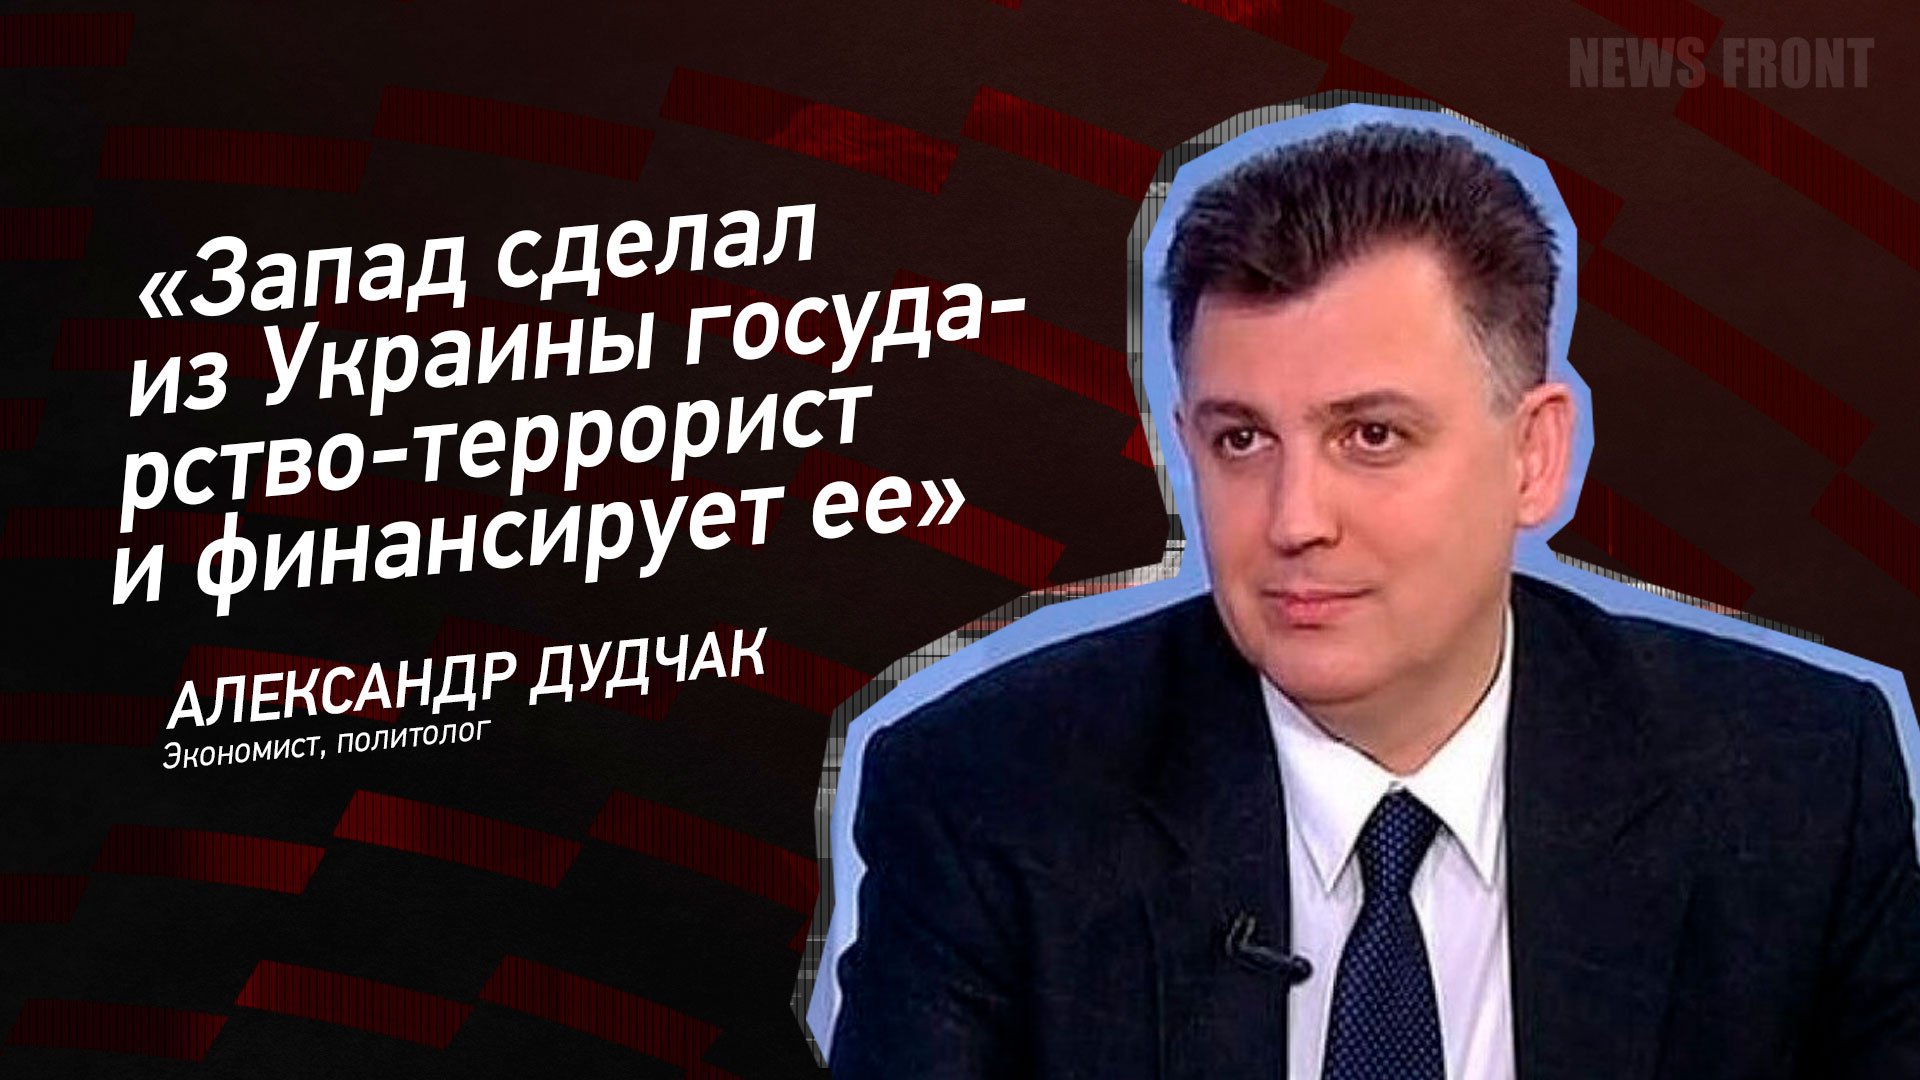 "Запад сделал из Украины государство-террорист и финансирует ее" - Александр Дудчак